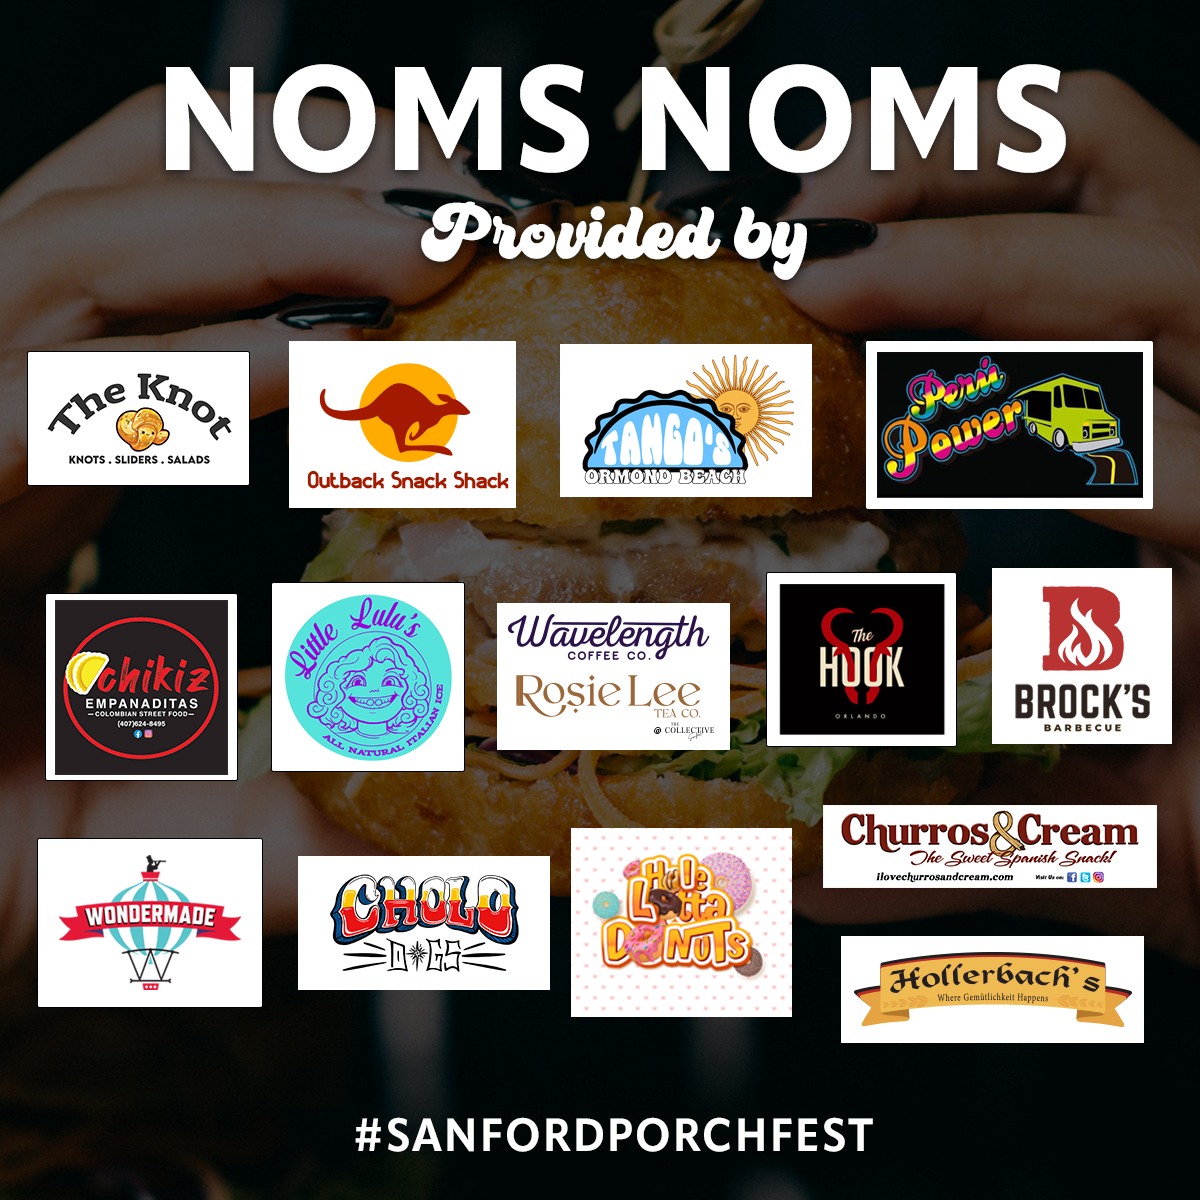 Sanford Porchfest Food